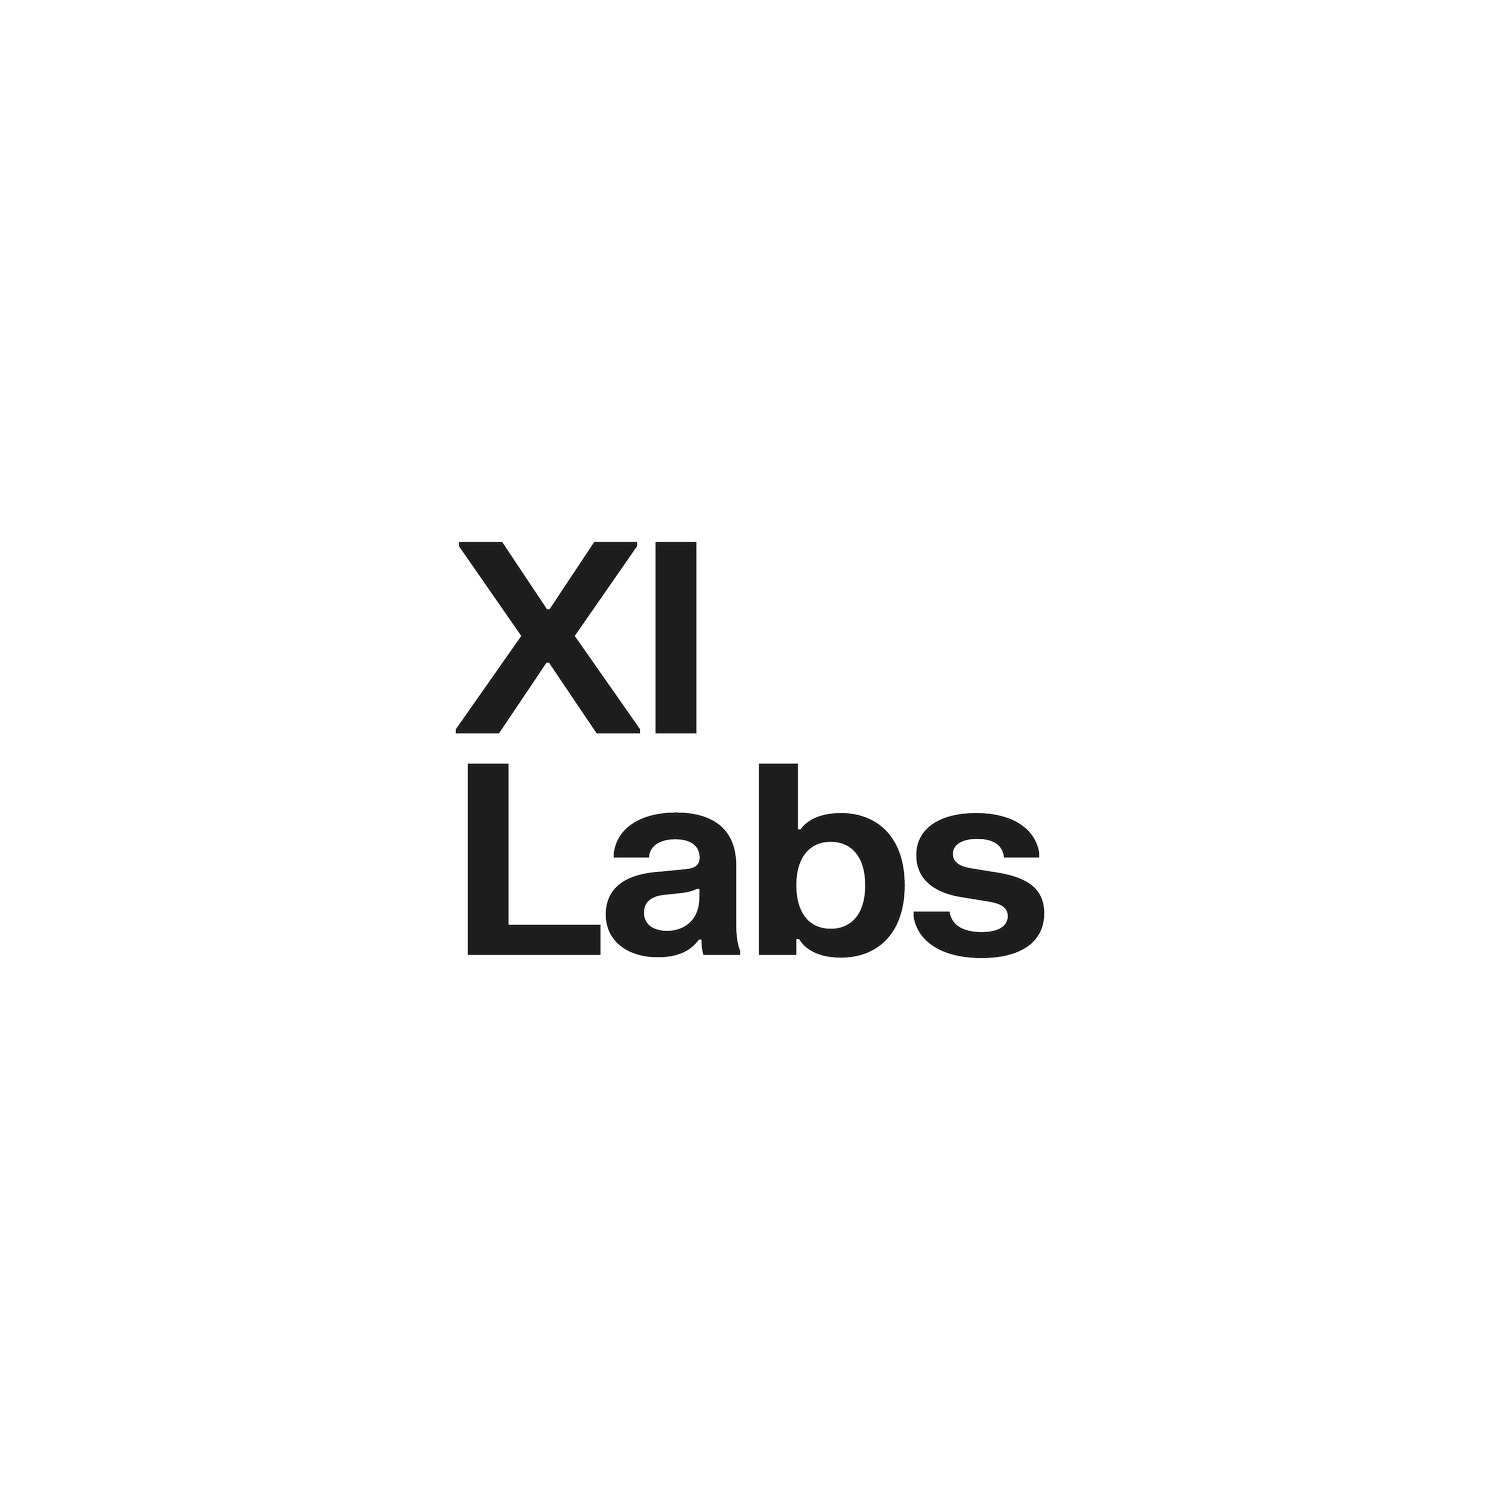 Xi Labs